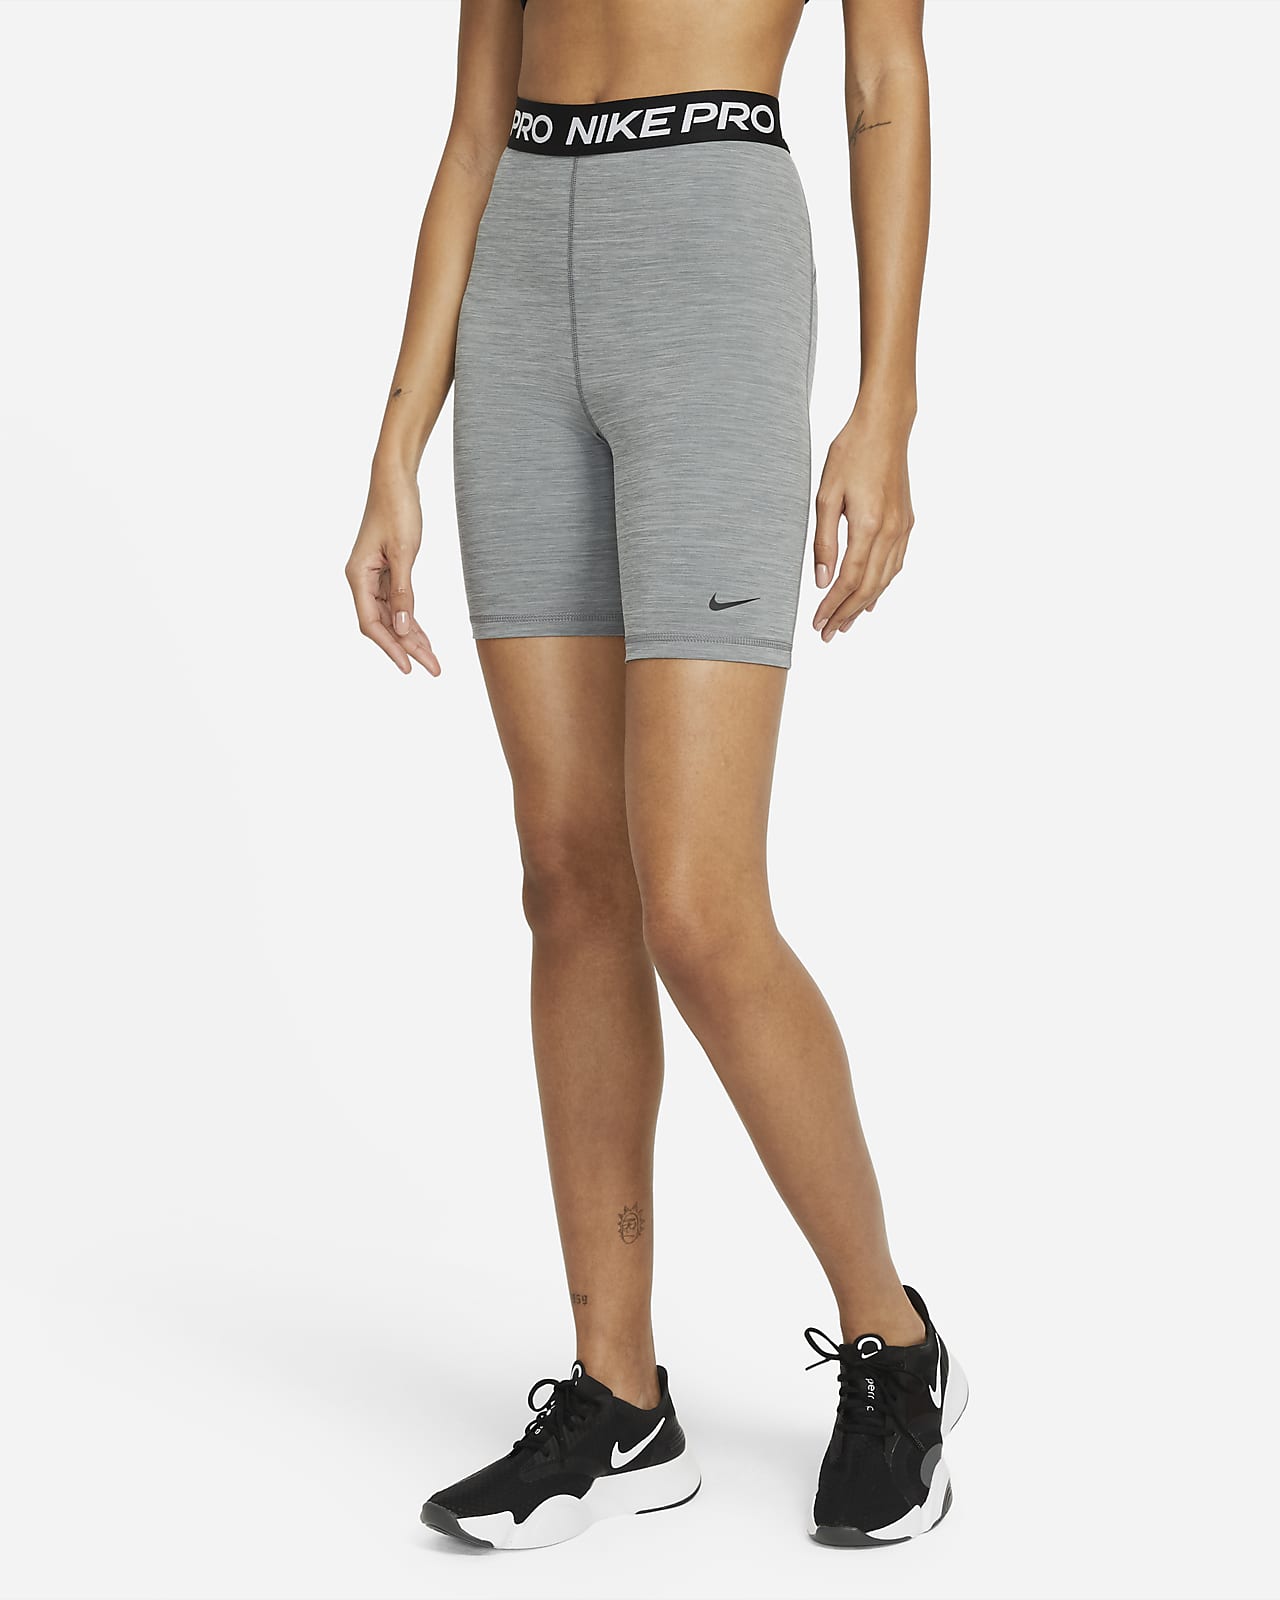 Vislumbrar virar construcción Shorts de 18 cm de tiro alto para mujer Nike Pro 365. Nike.com